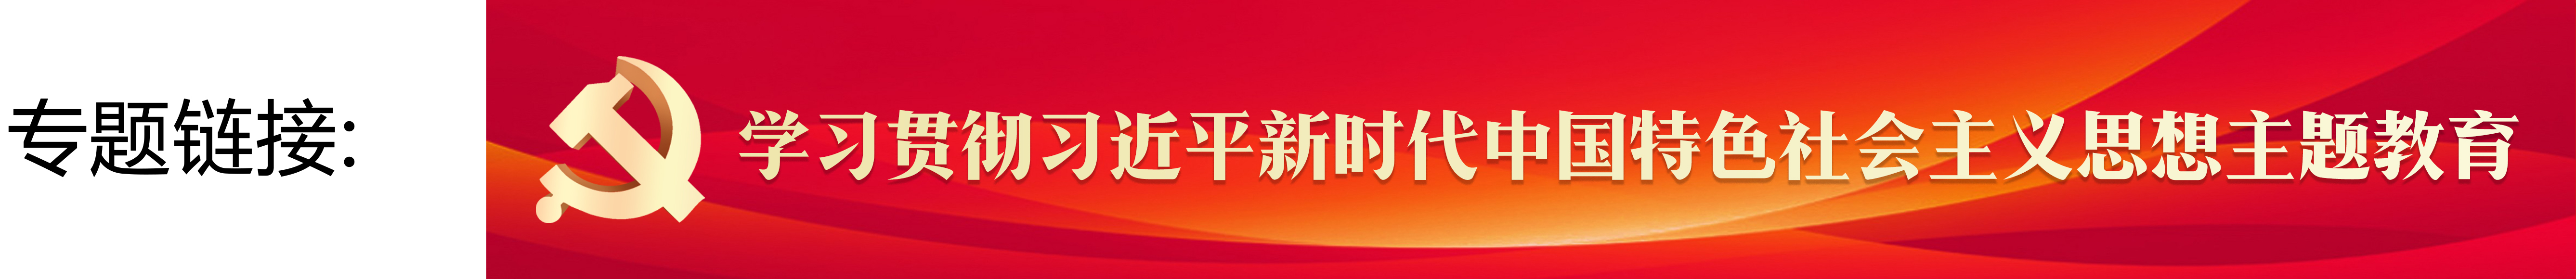 学习贯彻习近平新时代中国特色社会主义思想主题教育banner.jpg